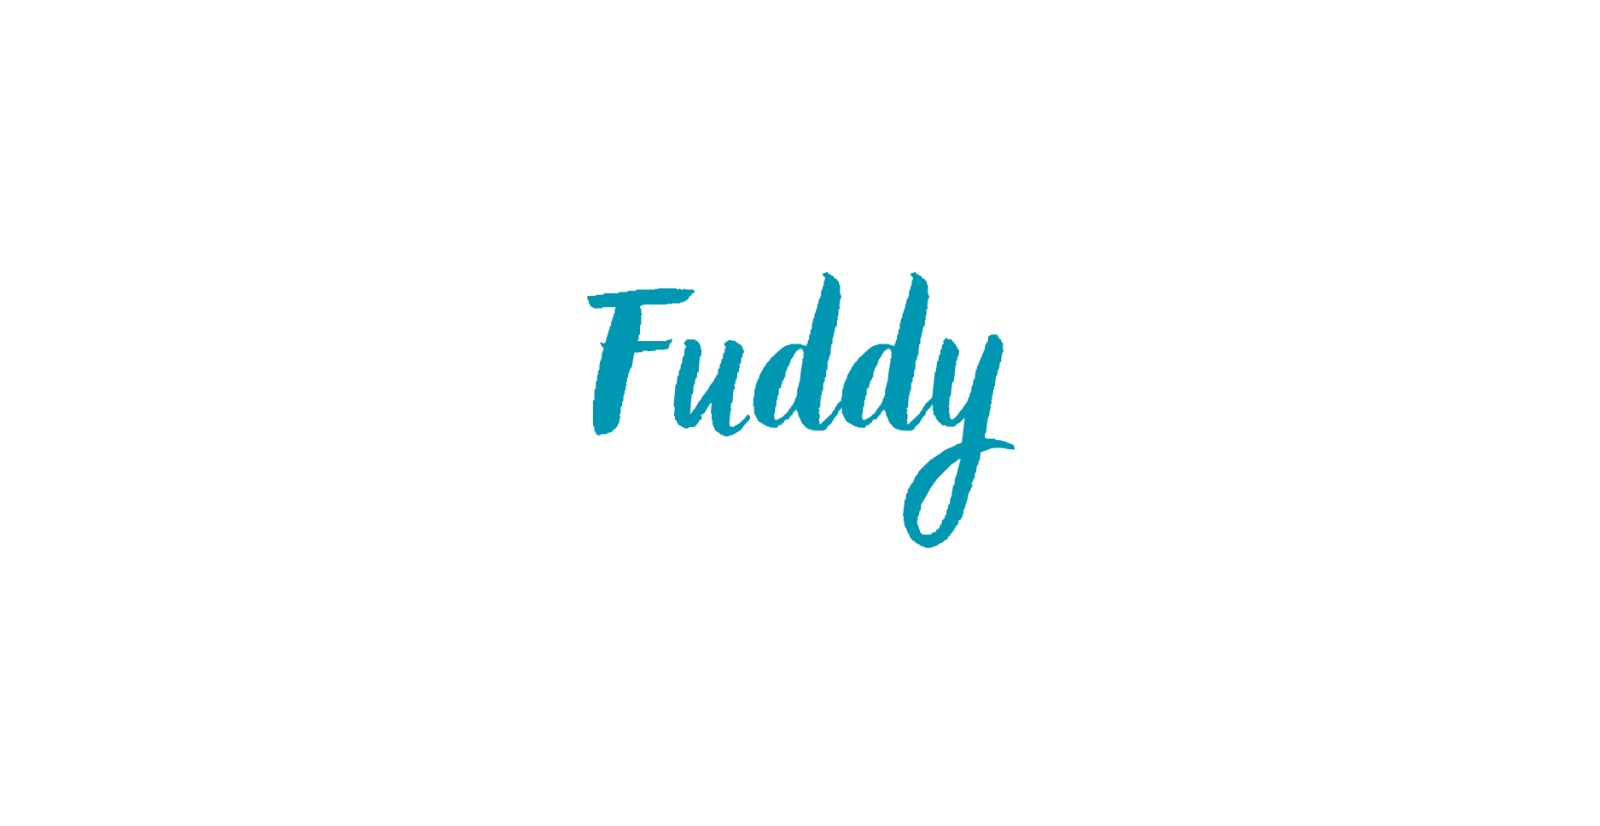 FuddyModa